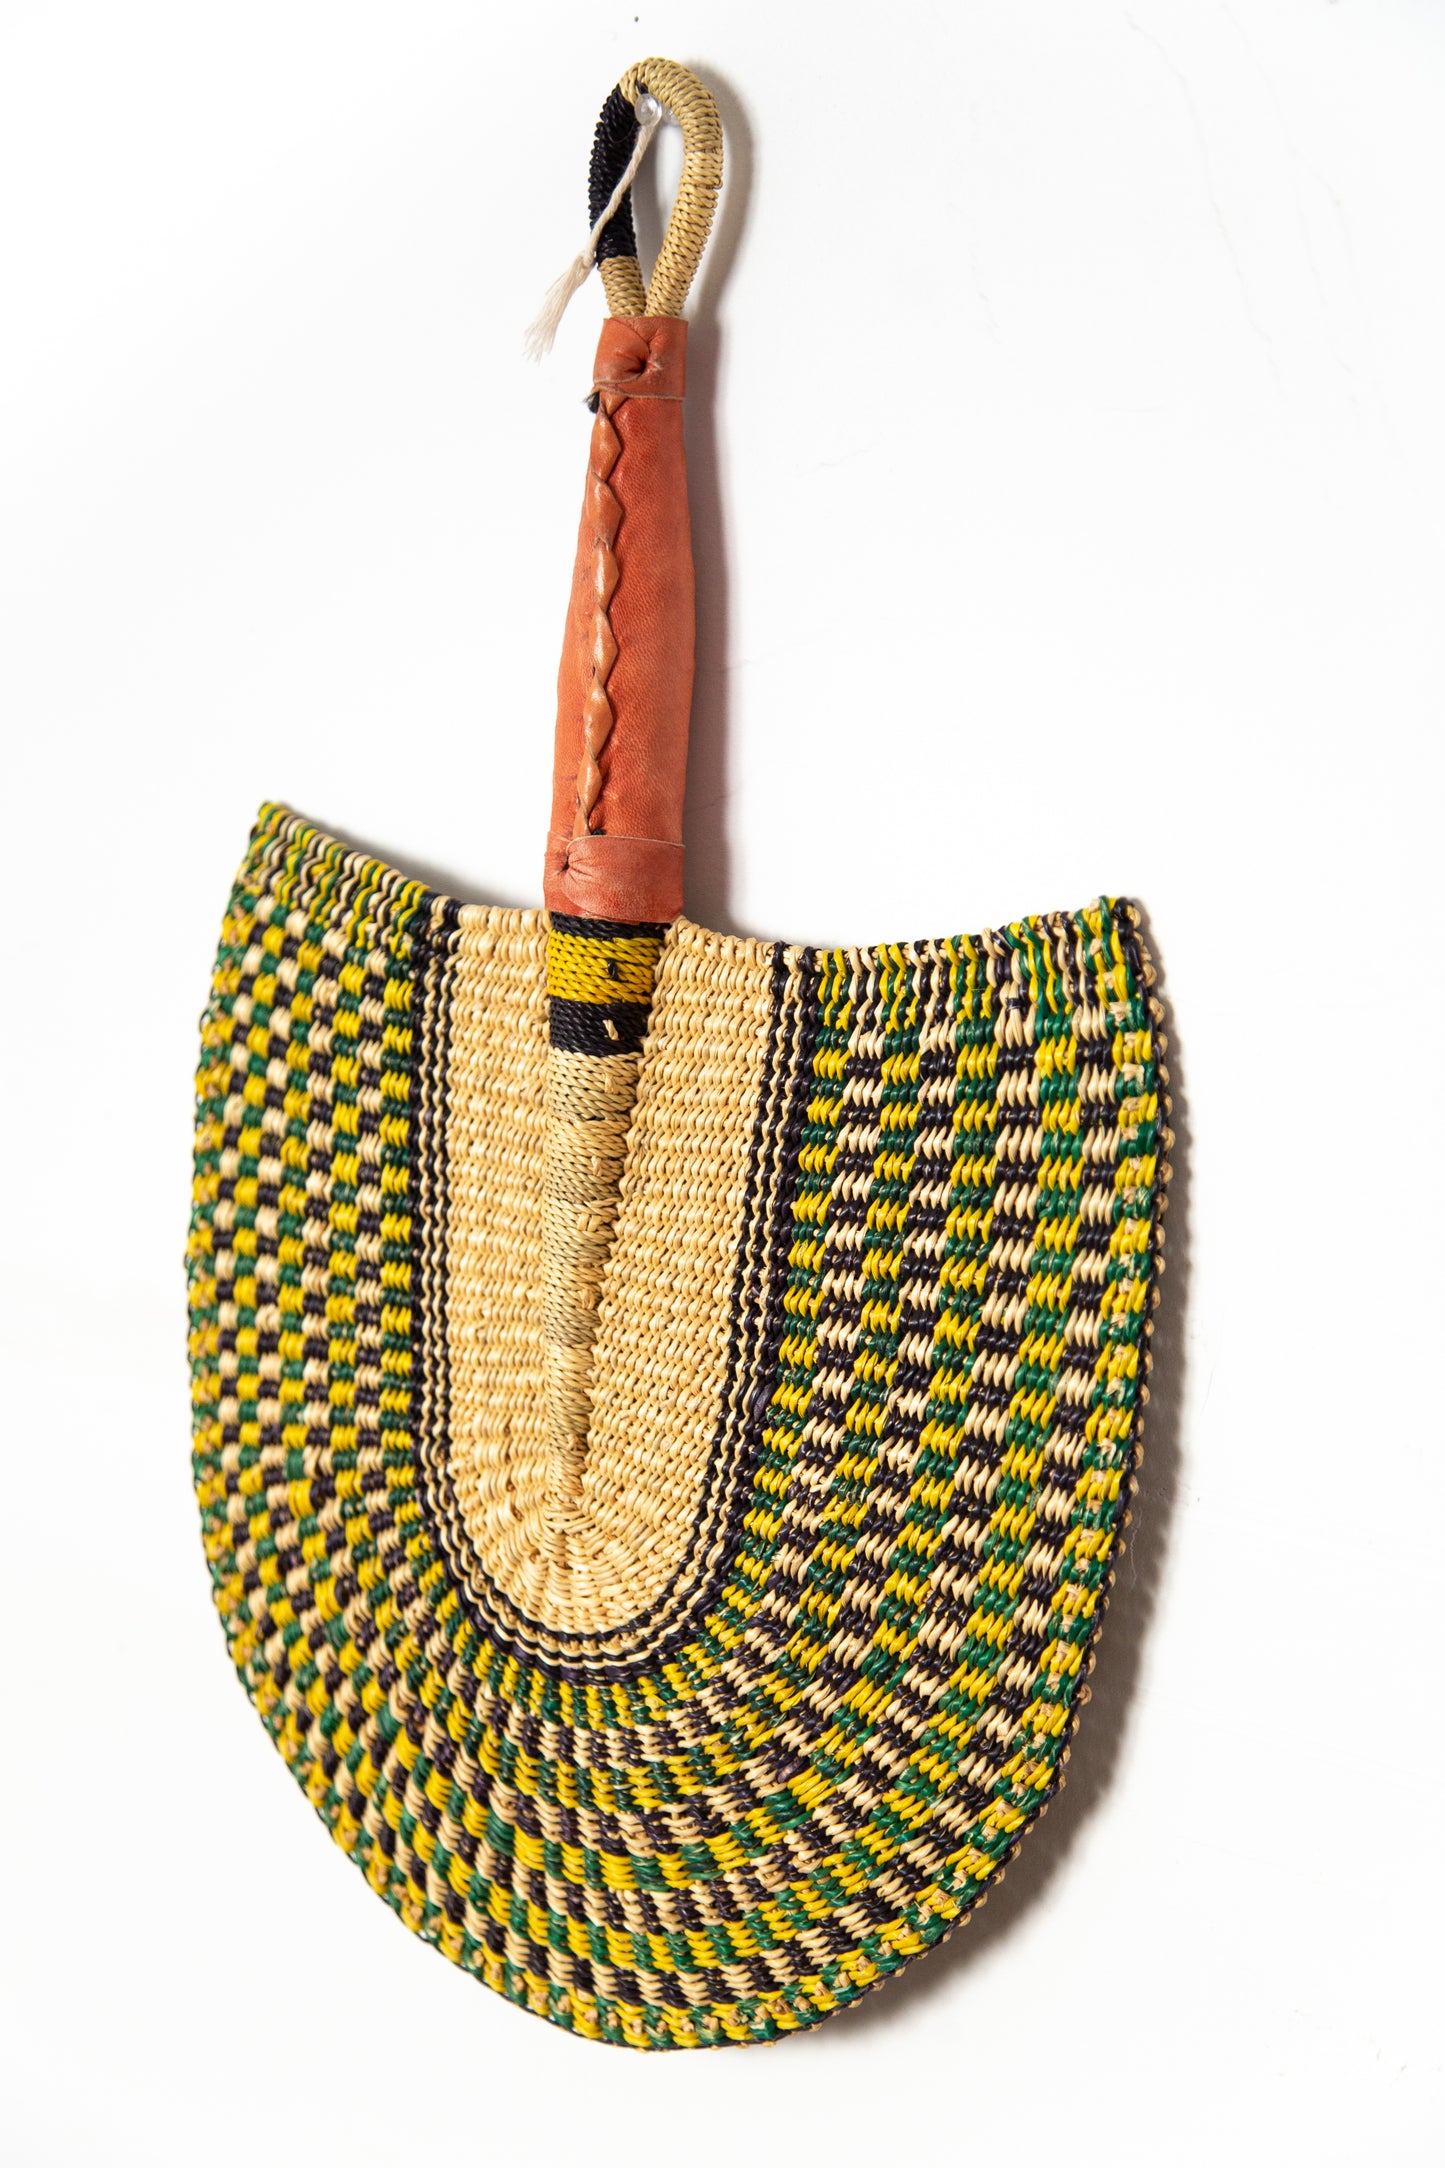 Benin Hand Fan & Wall Hanging - Yellow/ Green